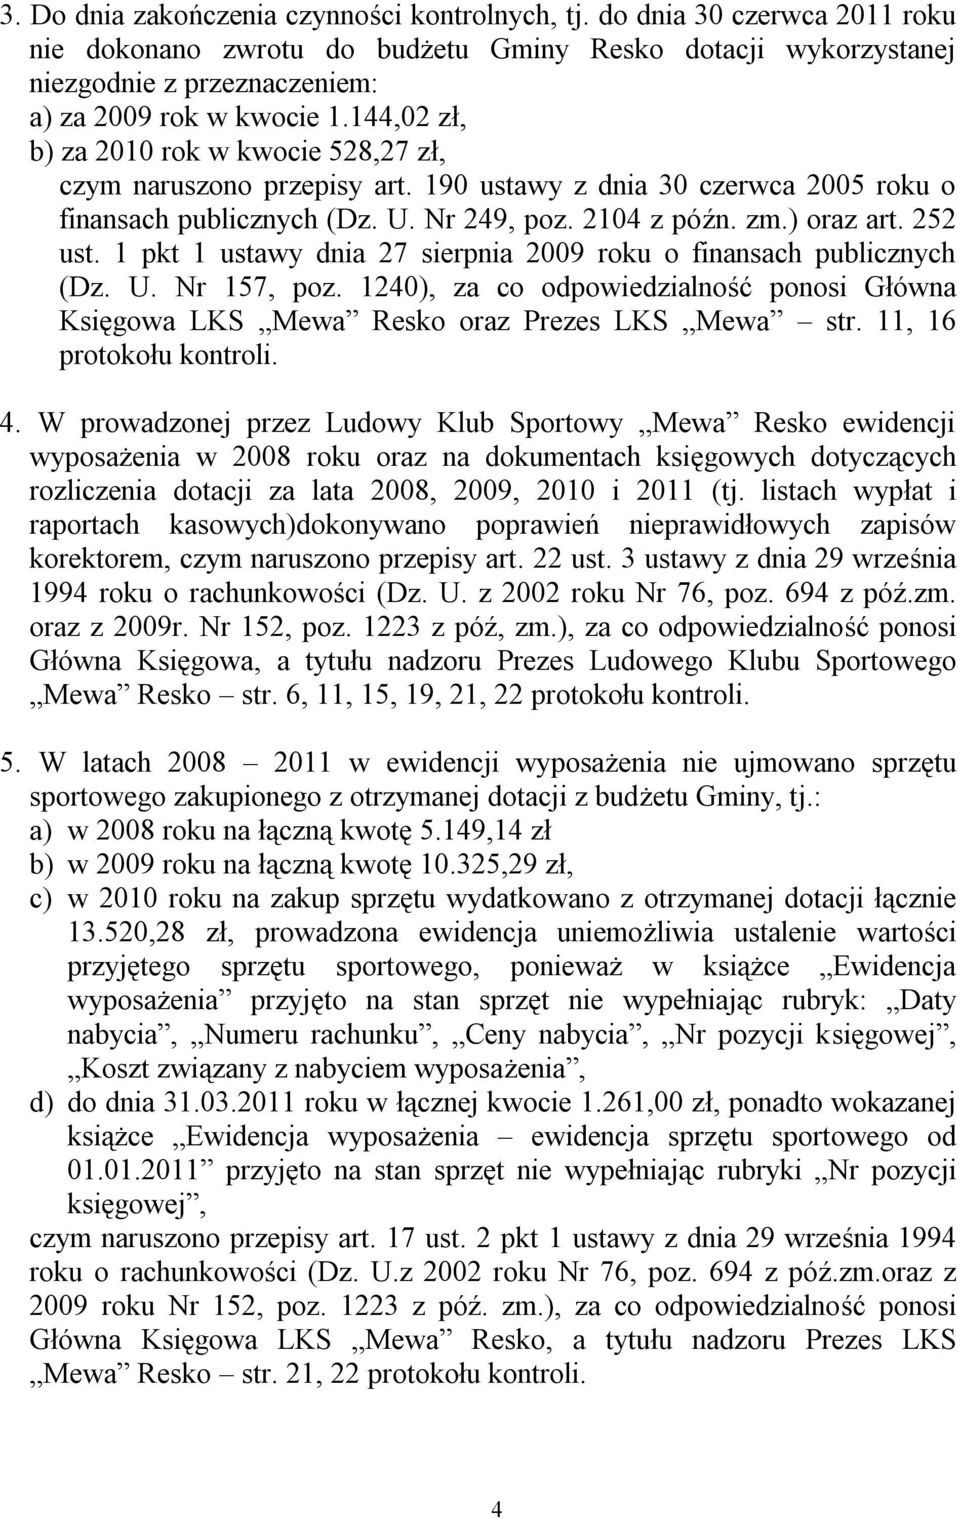 1 pkt 1 ustawy dnia 27 sierpnia 2009 roku o finansach publicznych (Dz. U. Nr 157, poz. 1240), za co odpowiedzialność ponosi Główna Księgowa LKS Mewa Resko oraz Prezes LKS Mewa str.